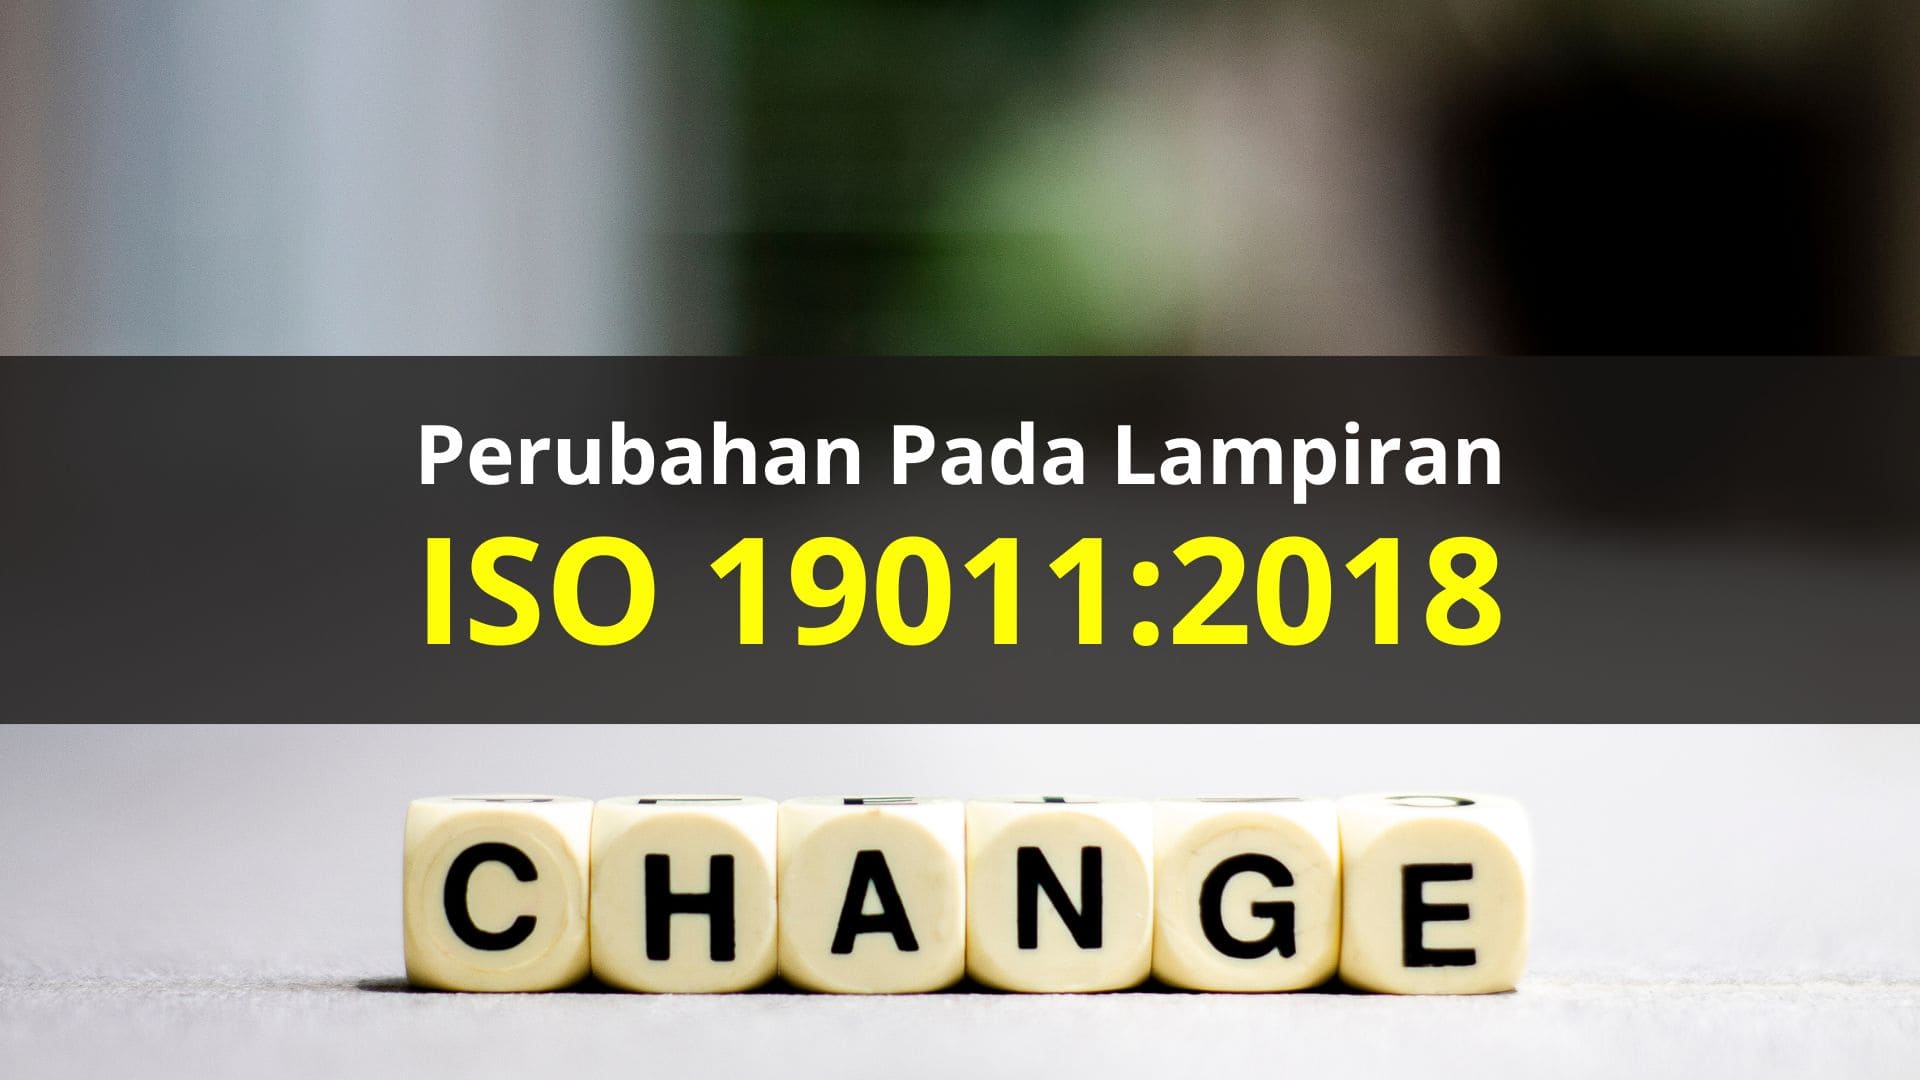 Perubahan pada lampiran ISO 19011:2018